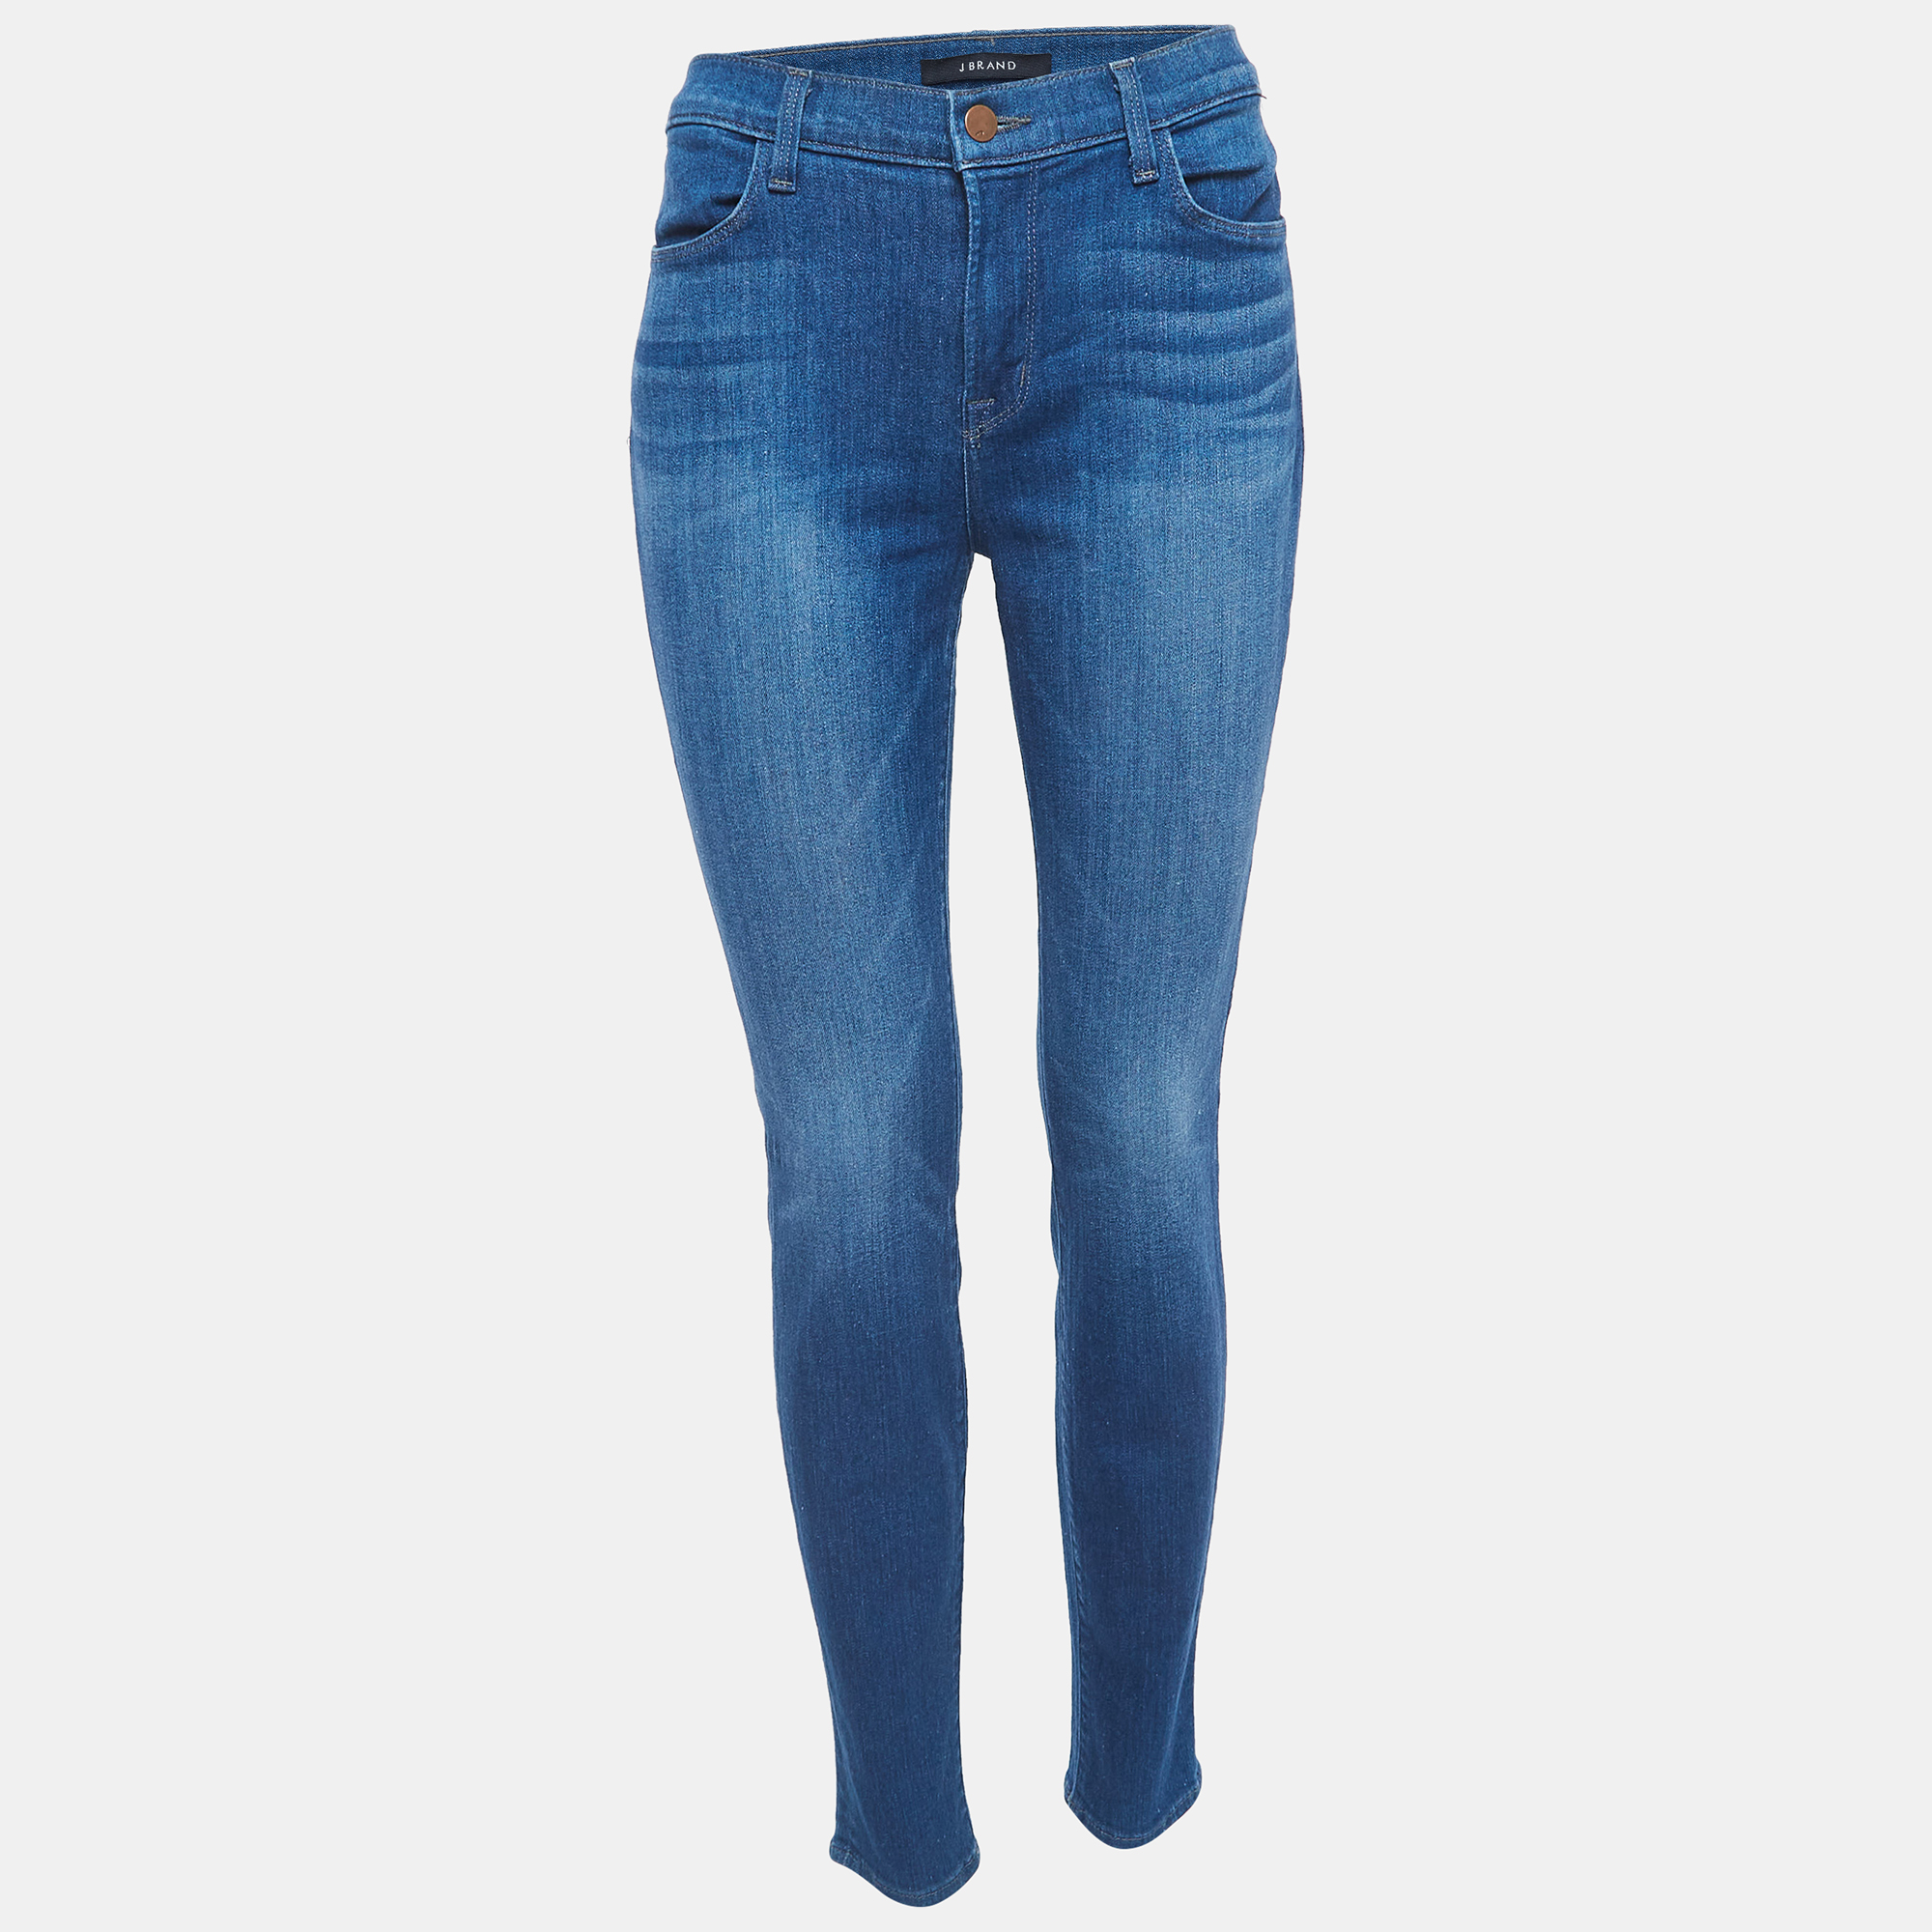 J Brand Blue Denim Super Skinny Jeans L Waist 31